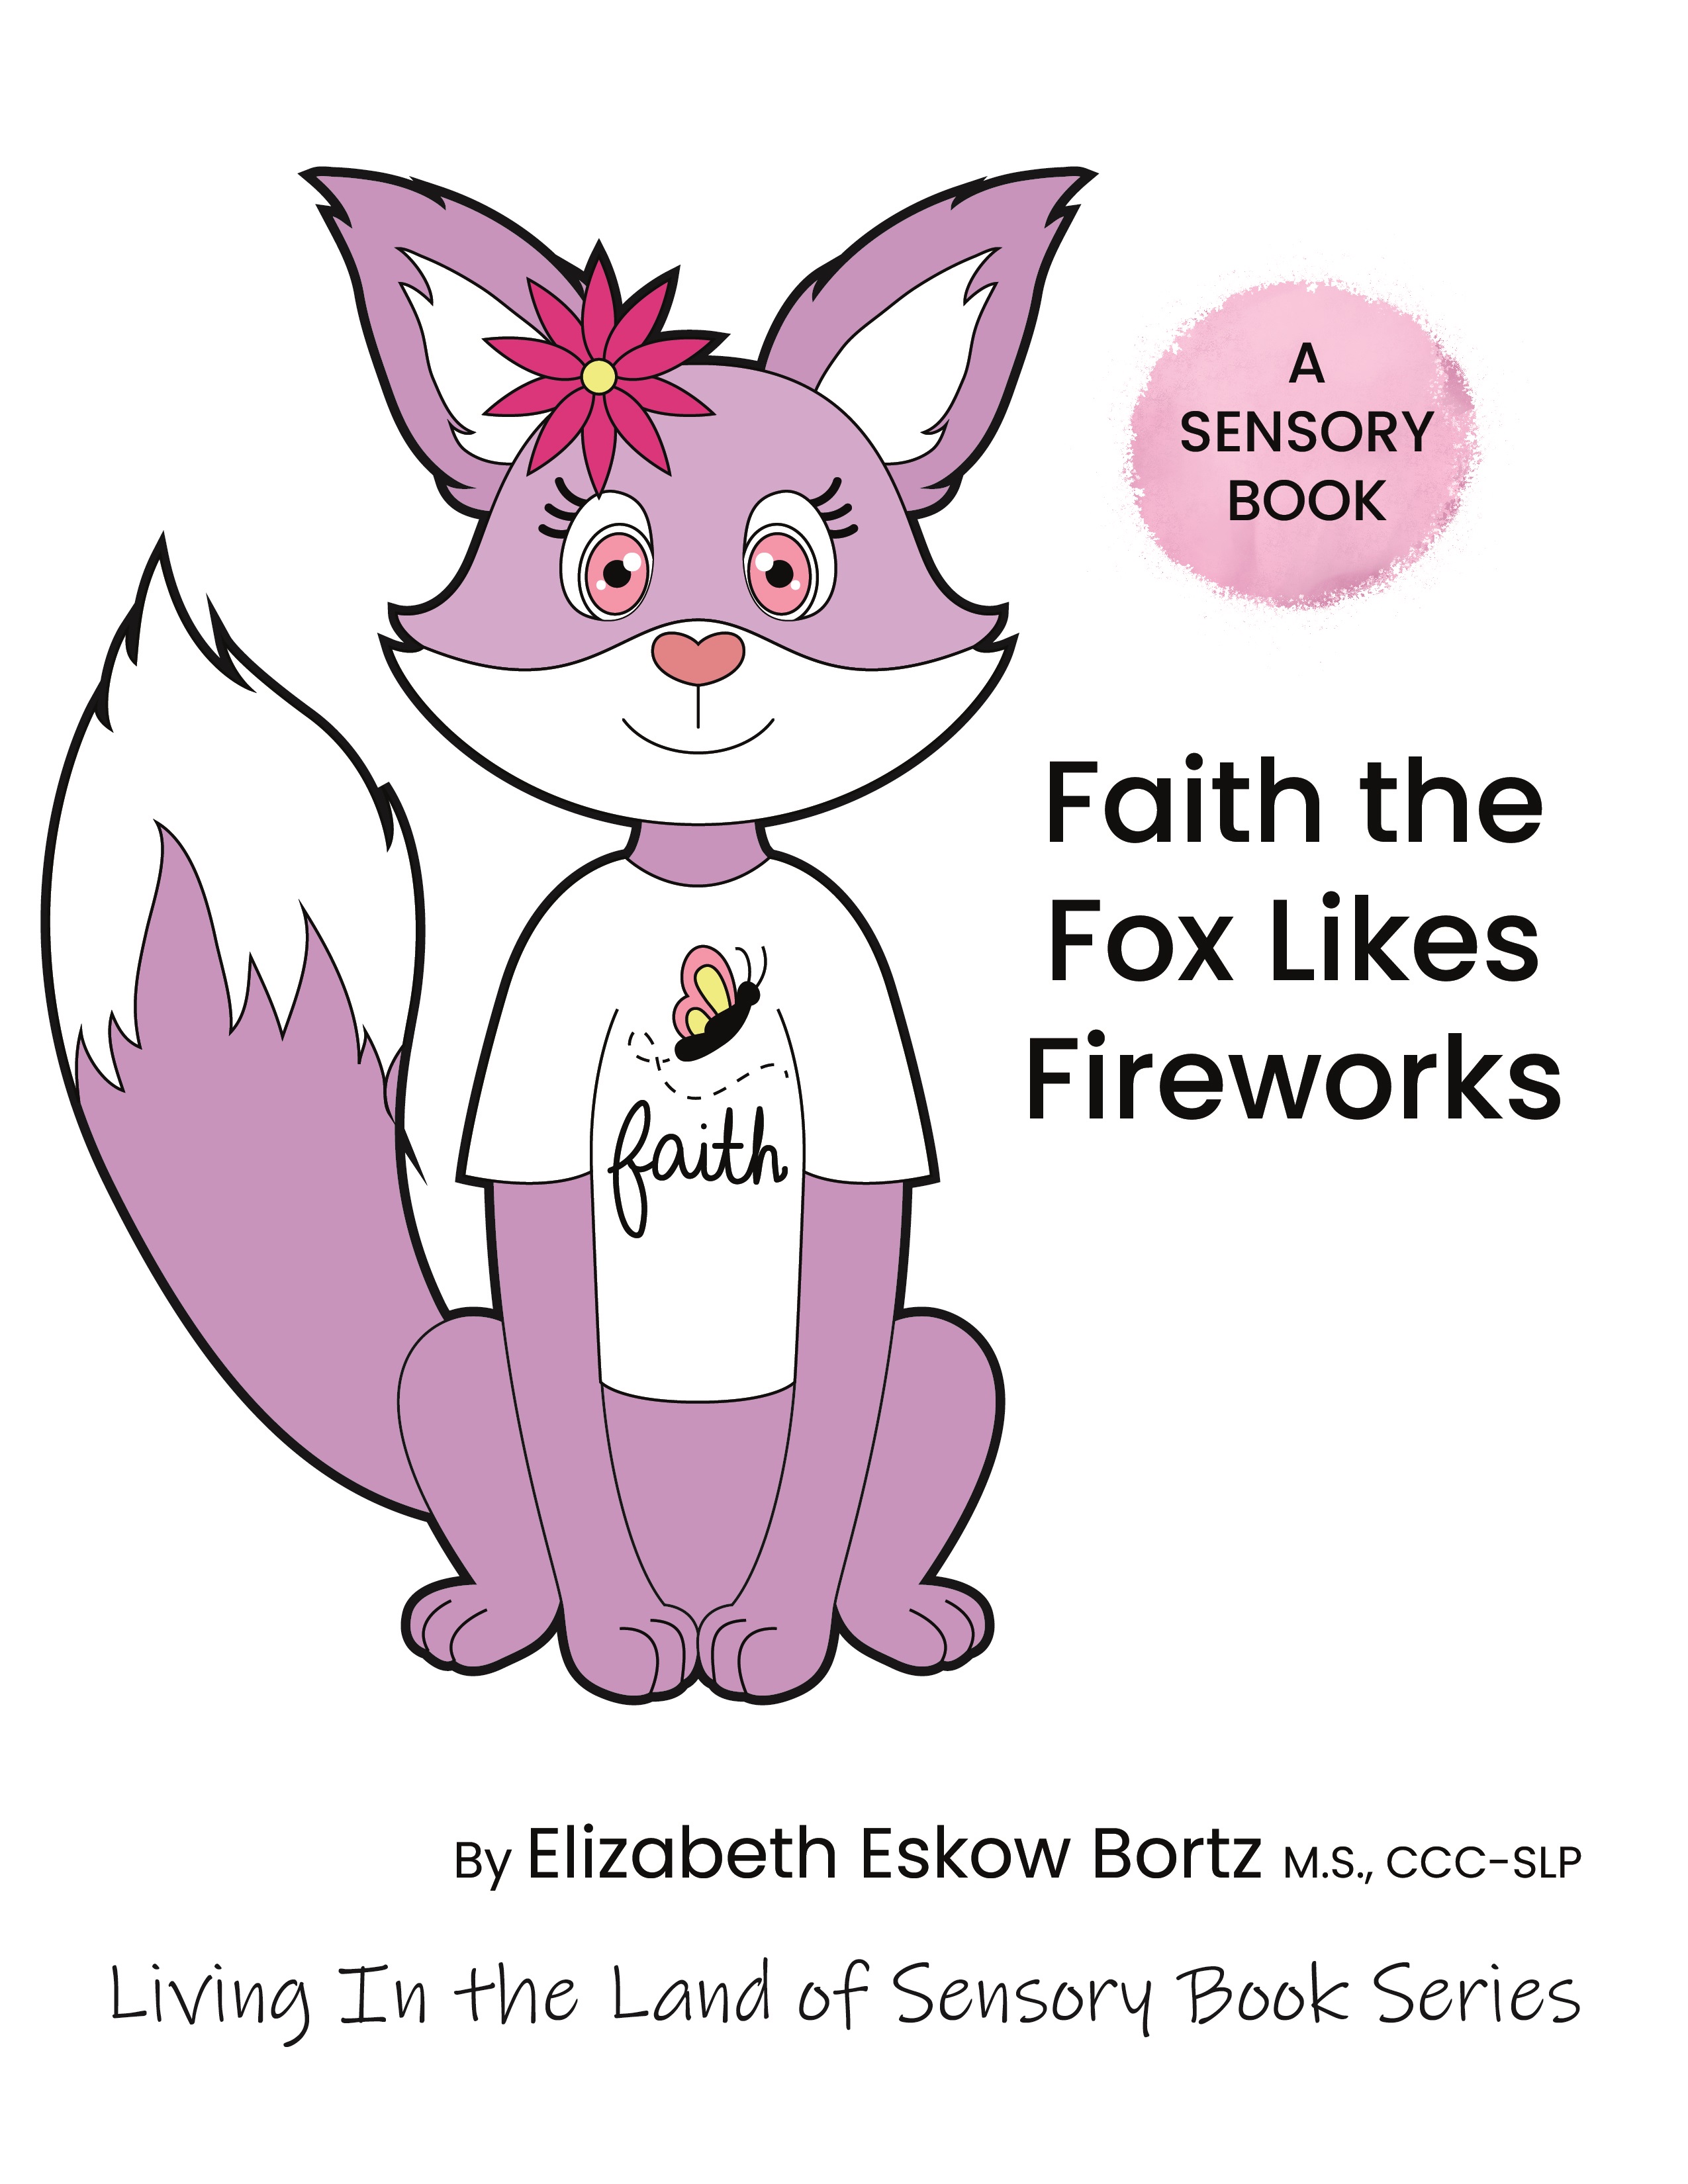 Faith the fox likes fireworks